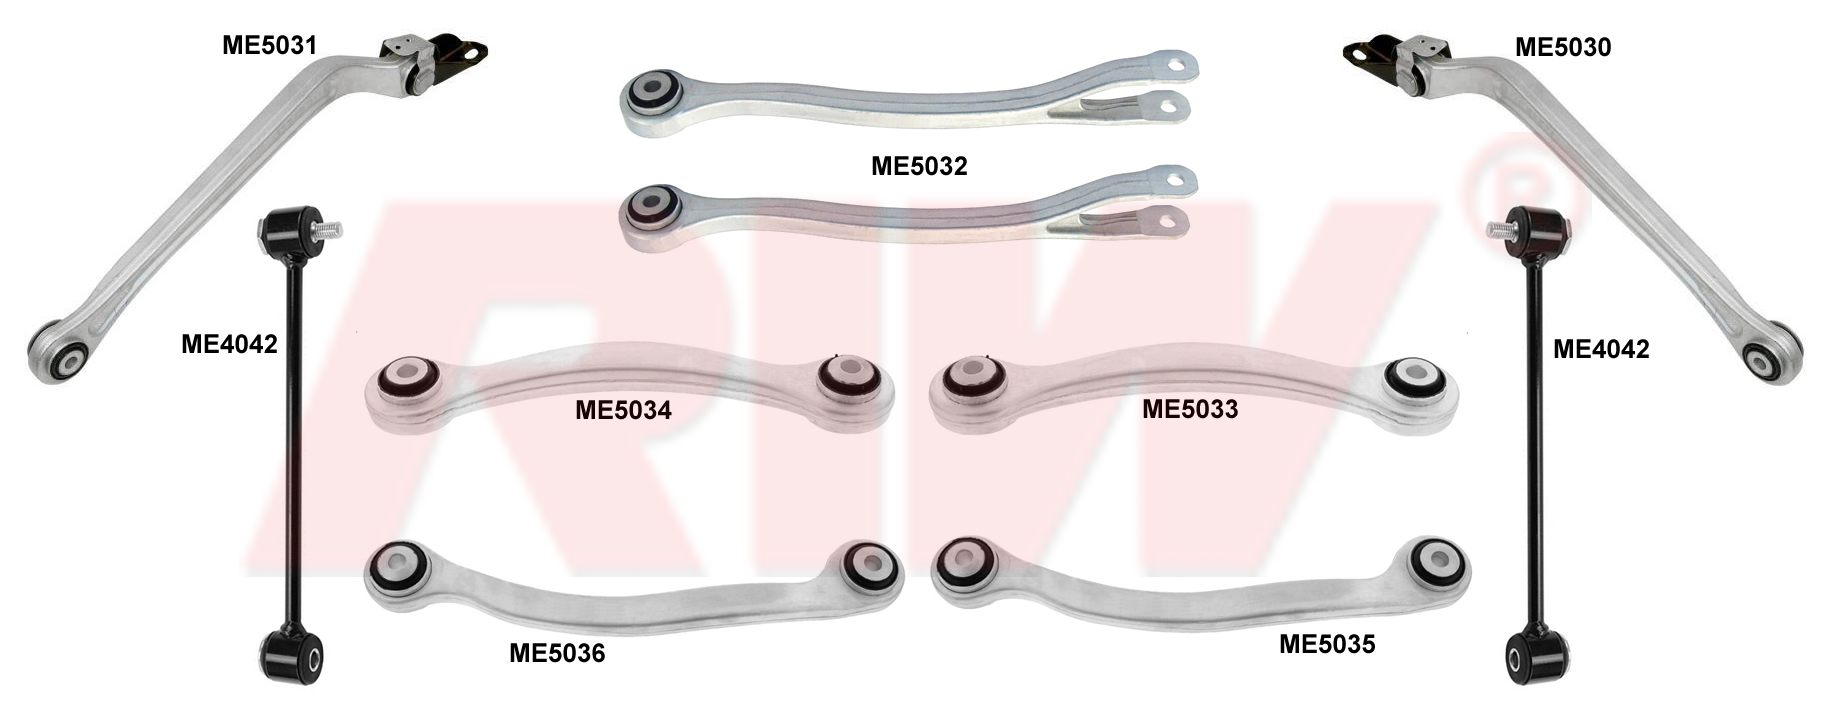 MERCEDES E CLASS (W211) 2003 - 2009 Süspansiyon Kit